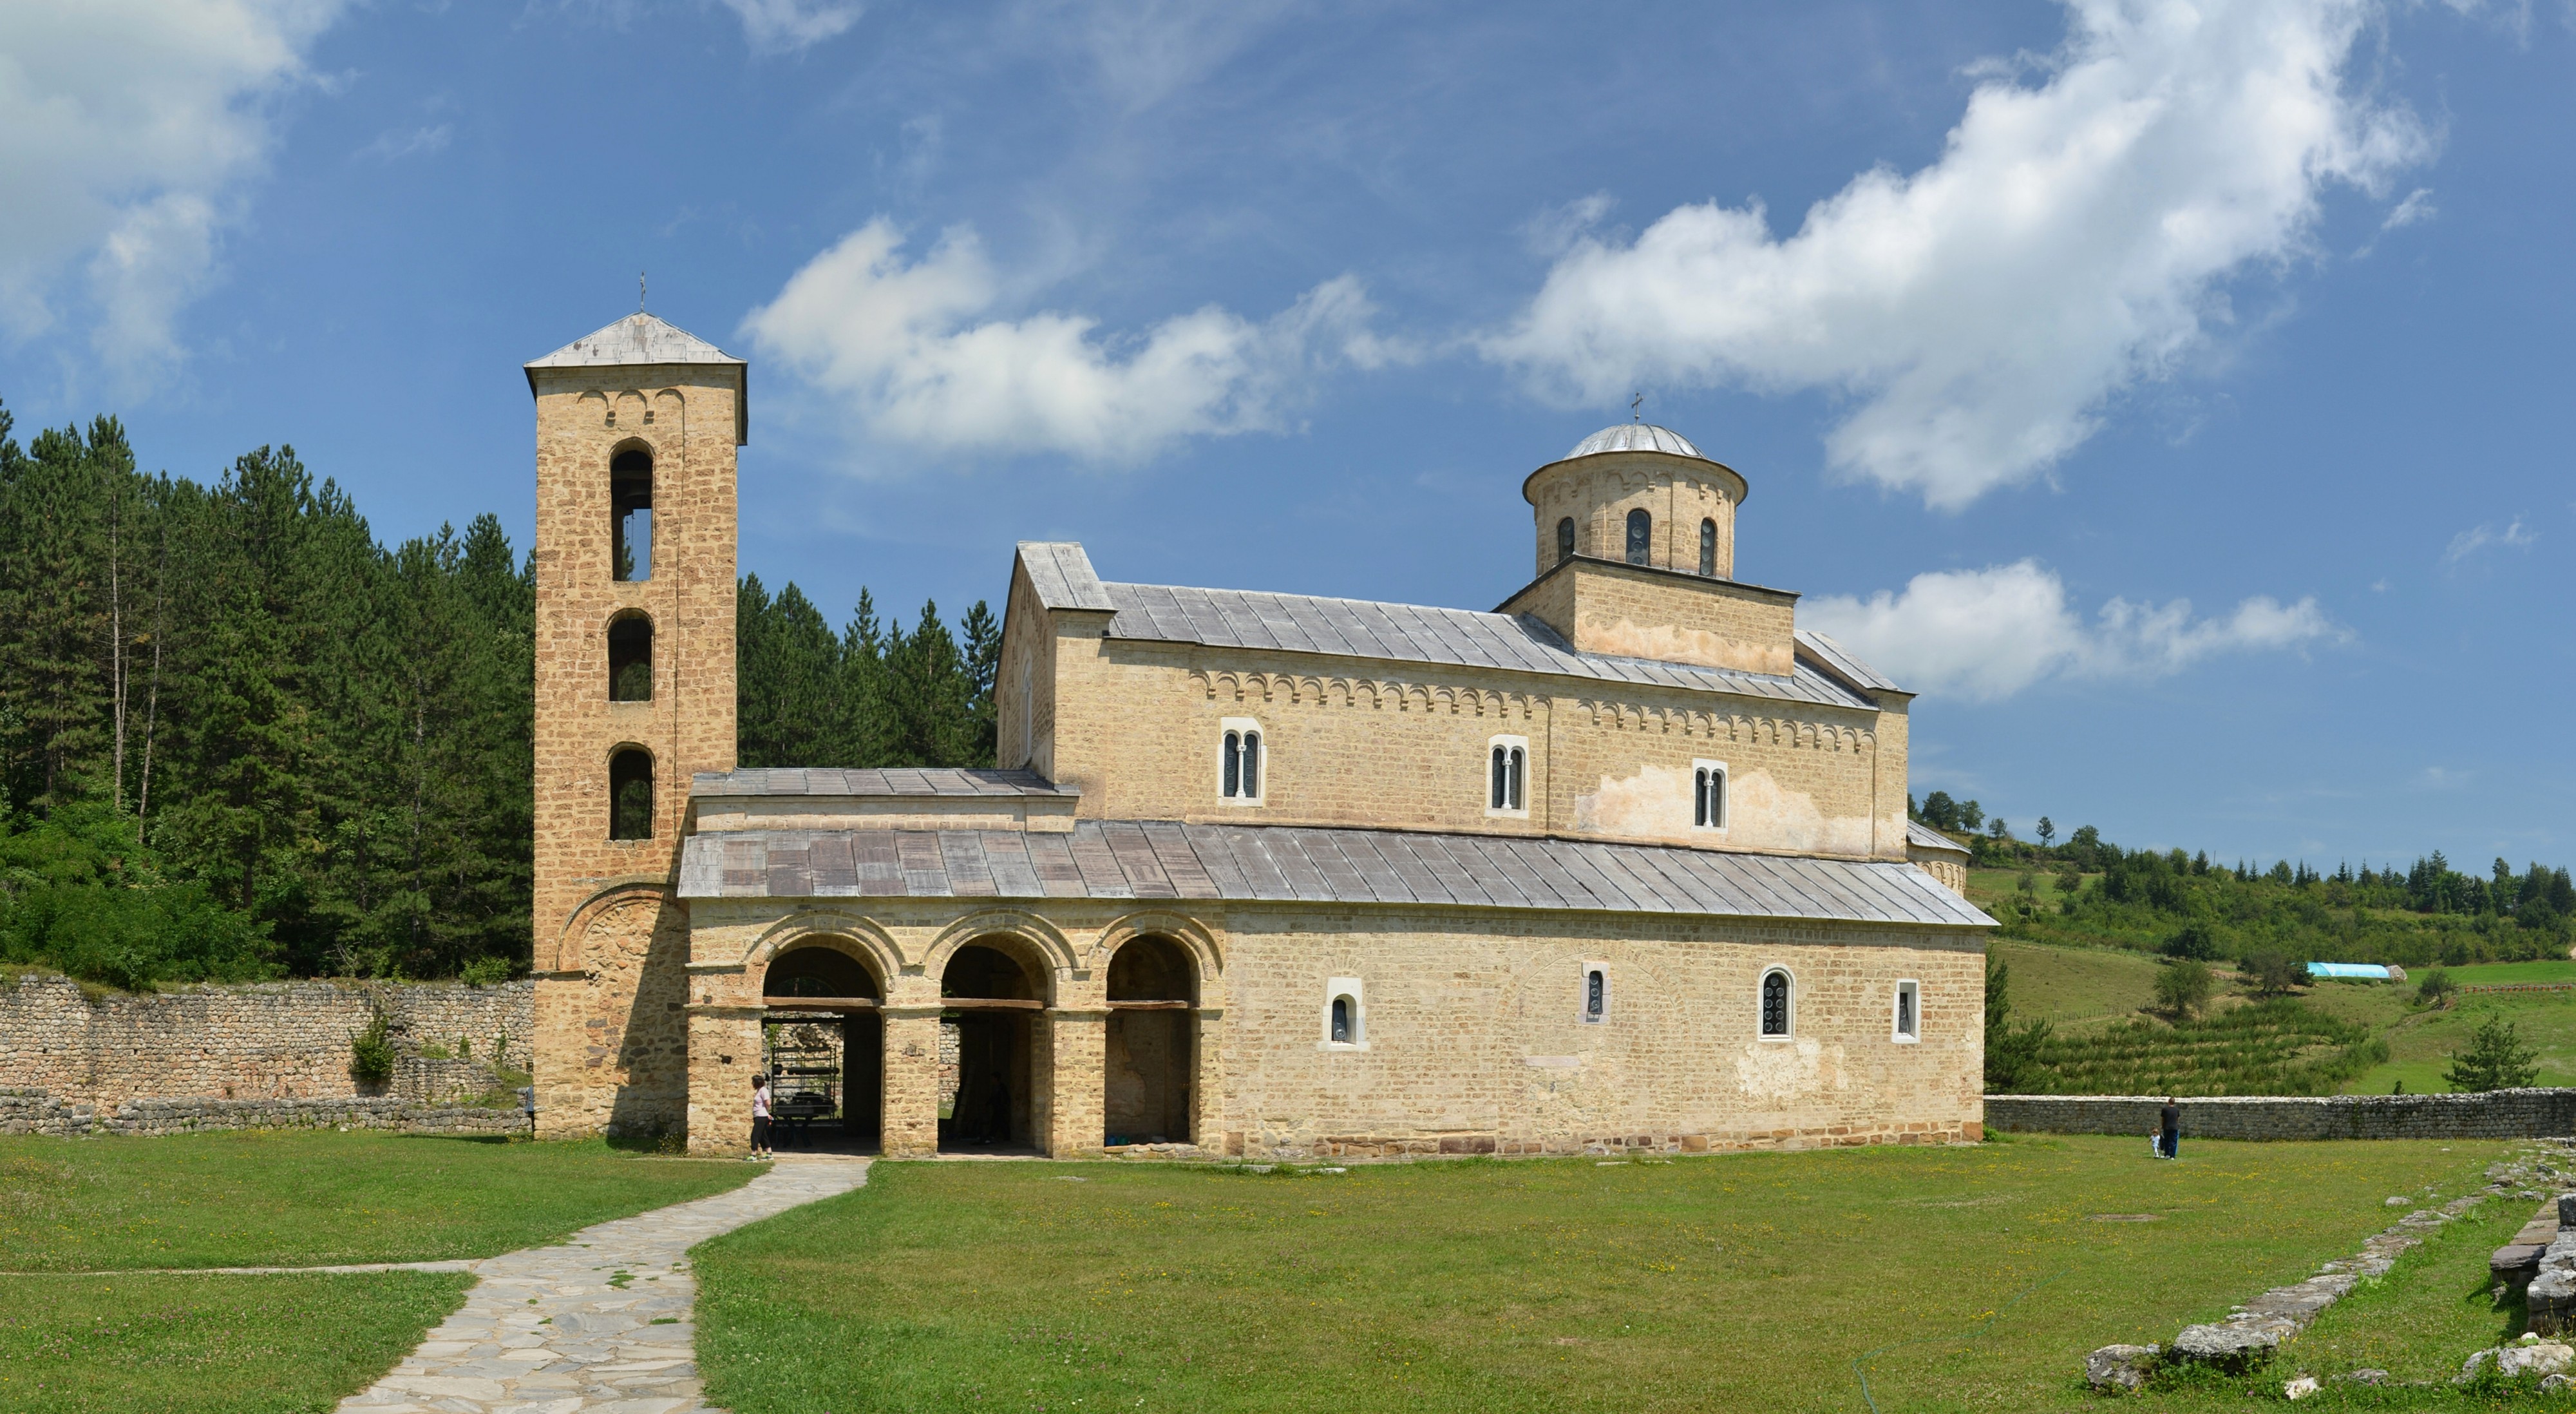 Manastir Sopoćani (by Pudelek)